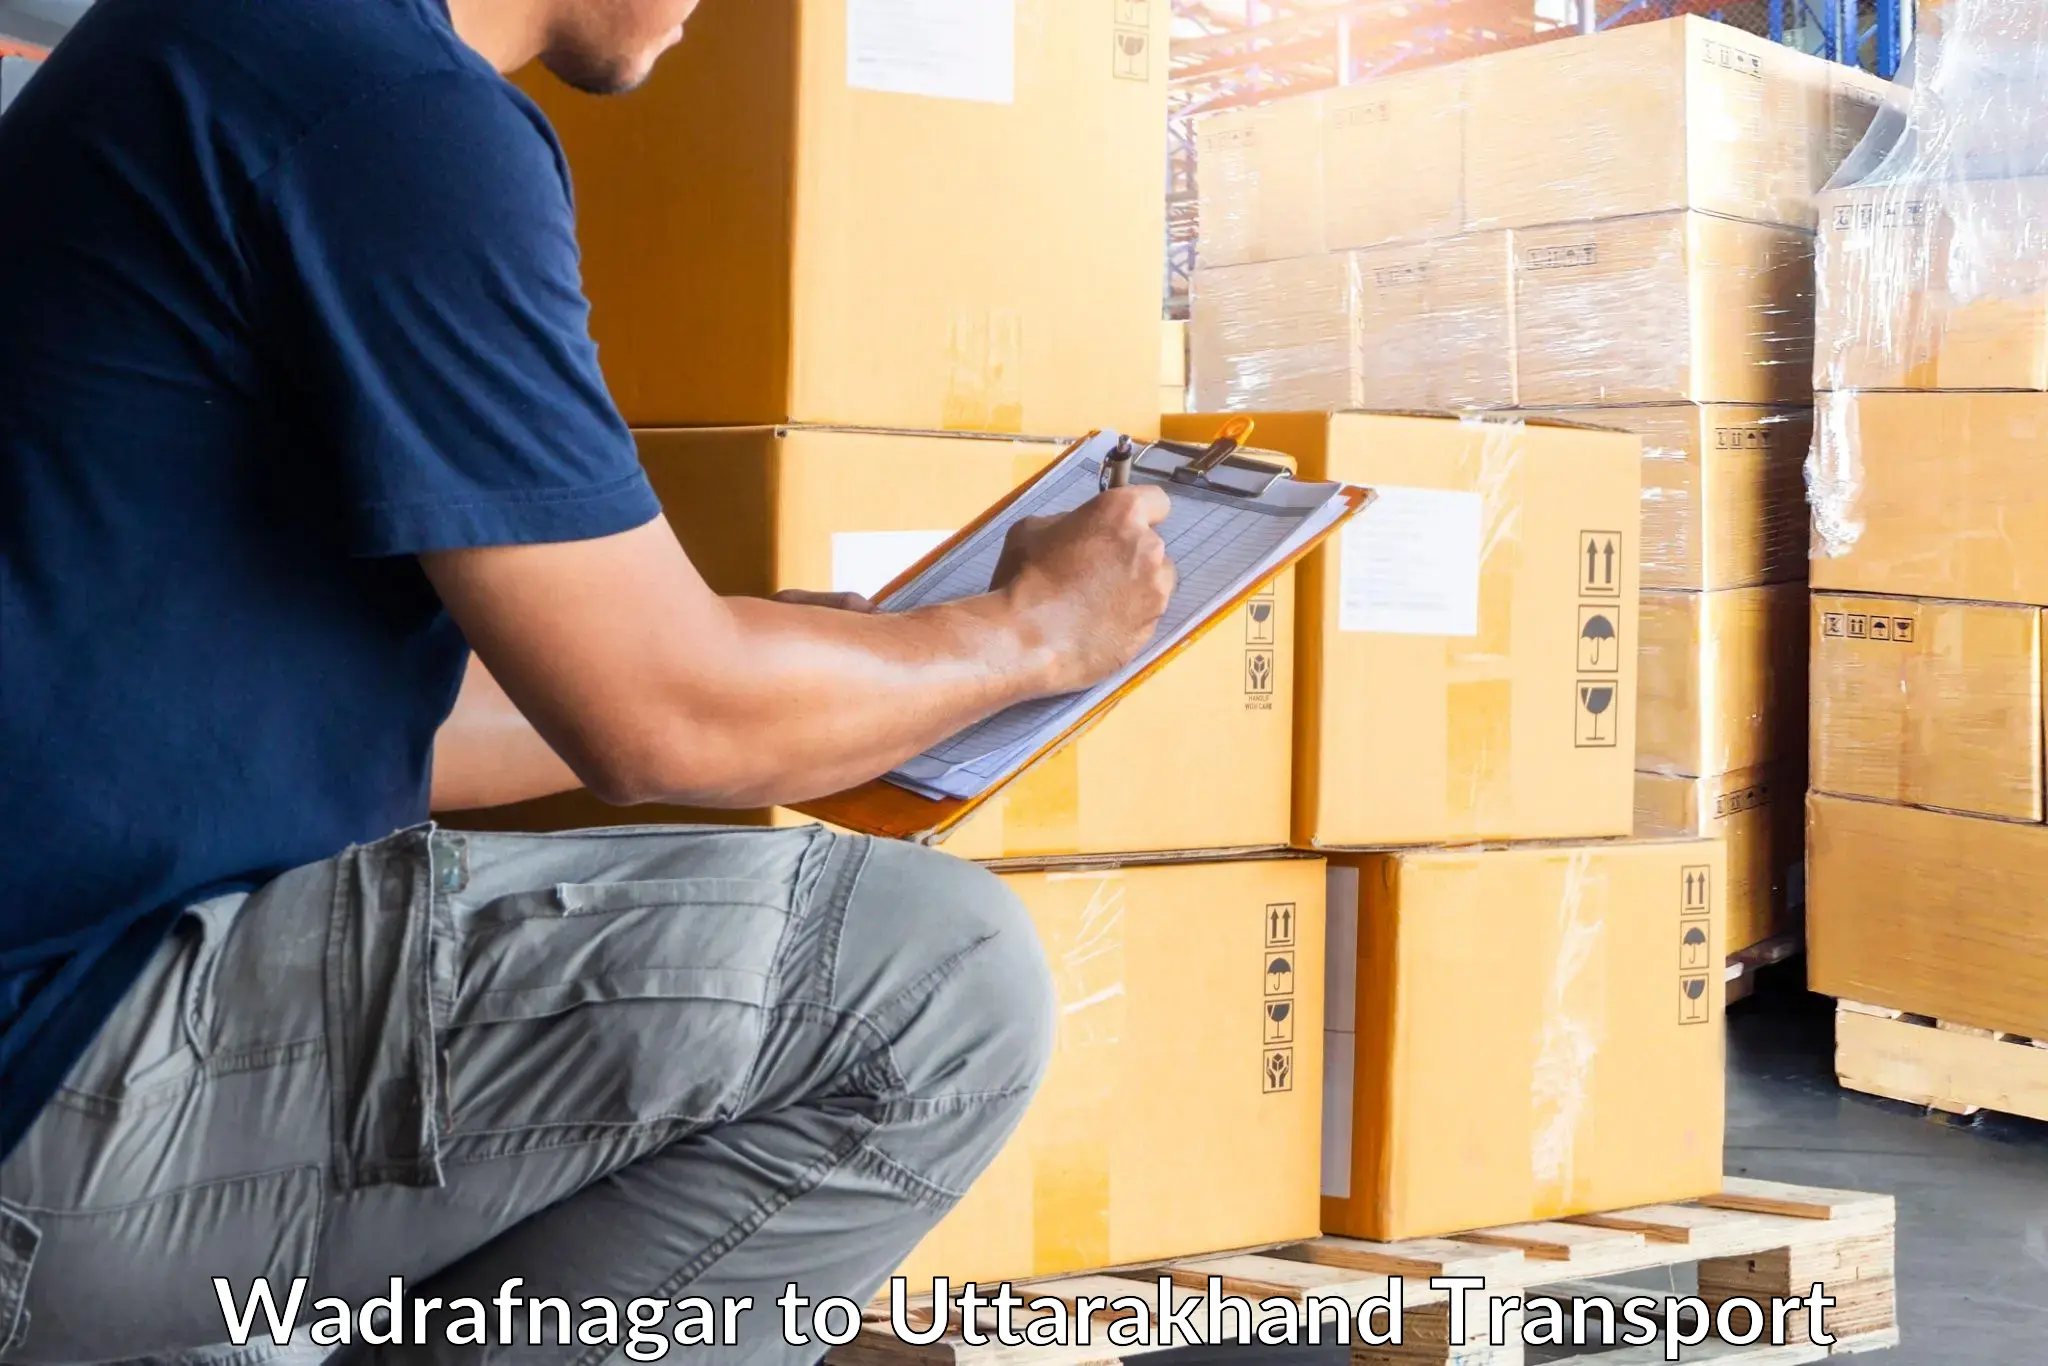 Package delivery services Wadrafnagar to Kashipur